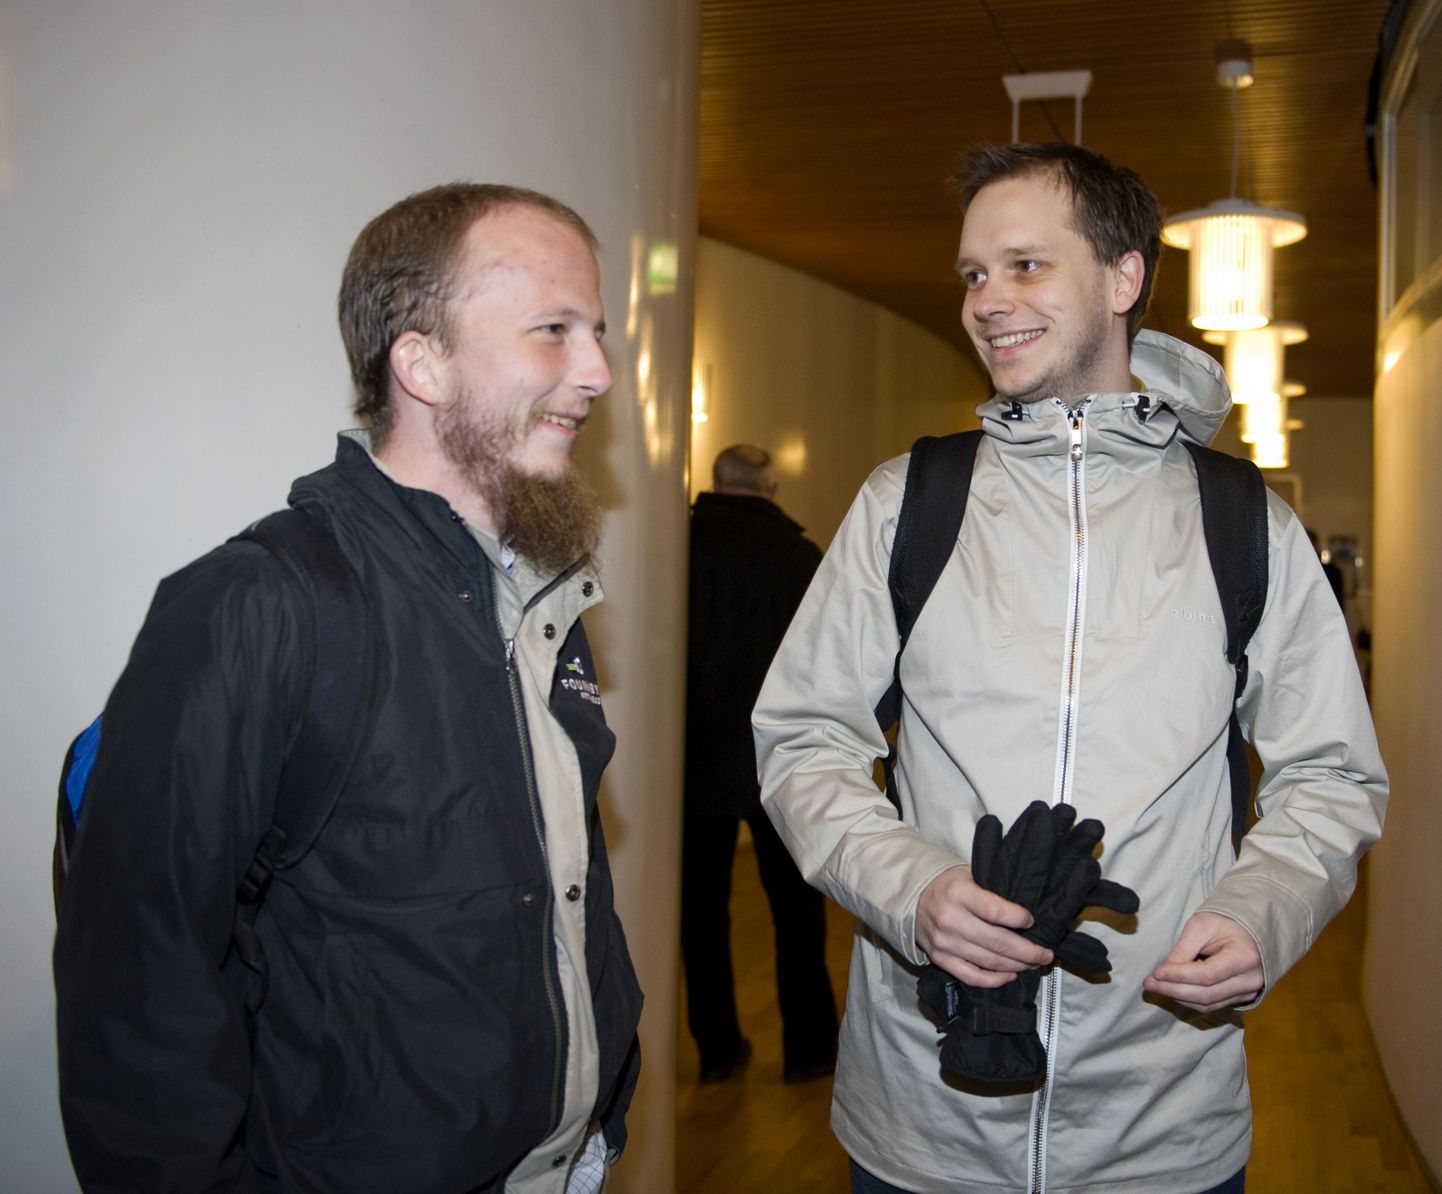 Pirate Bay asutajad Gottfrid Svartholm Warg ja Peter Sunde Stockholmis.